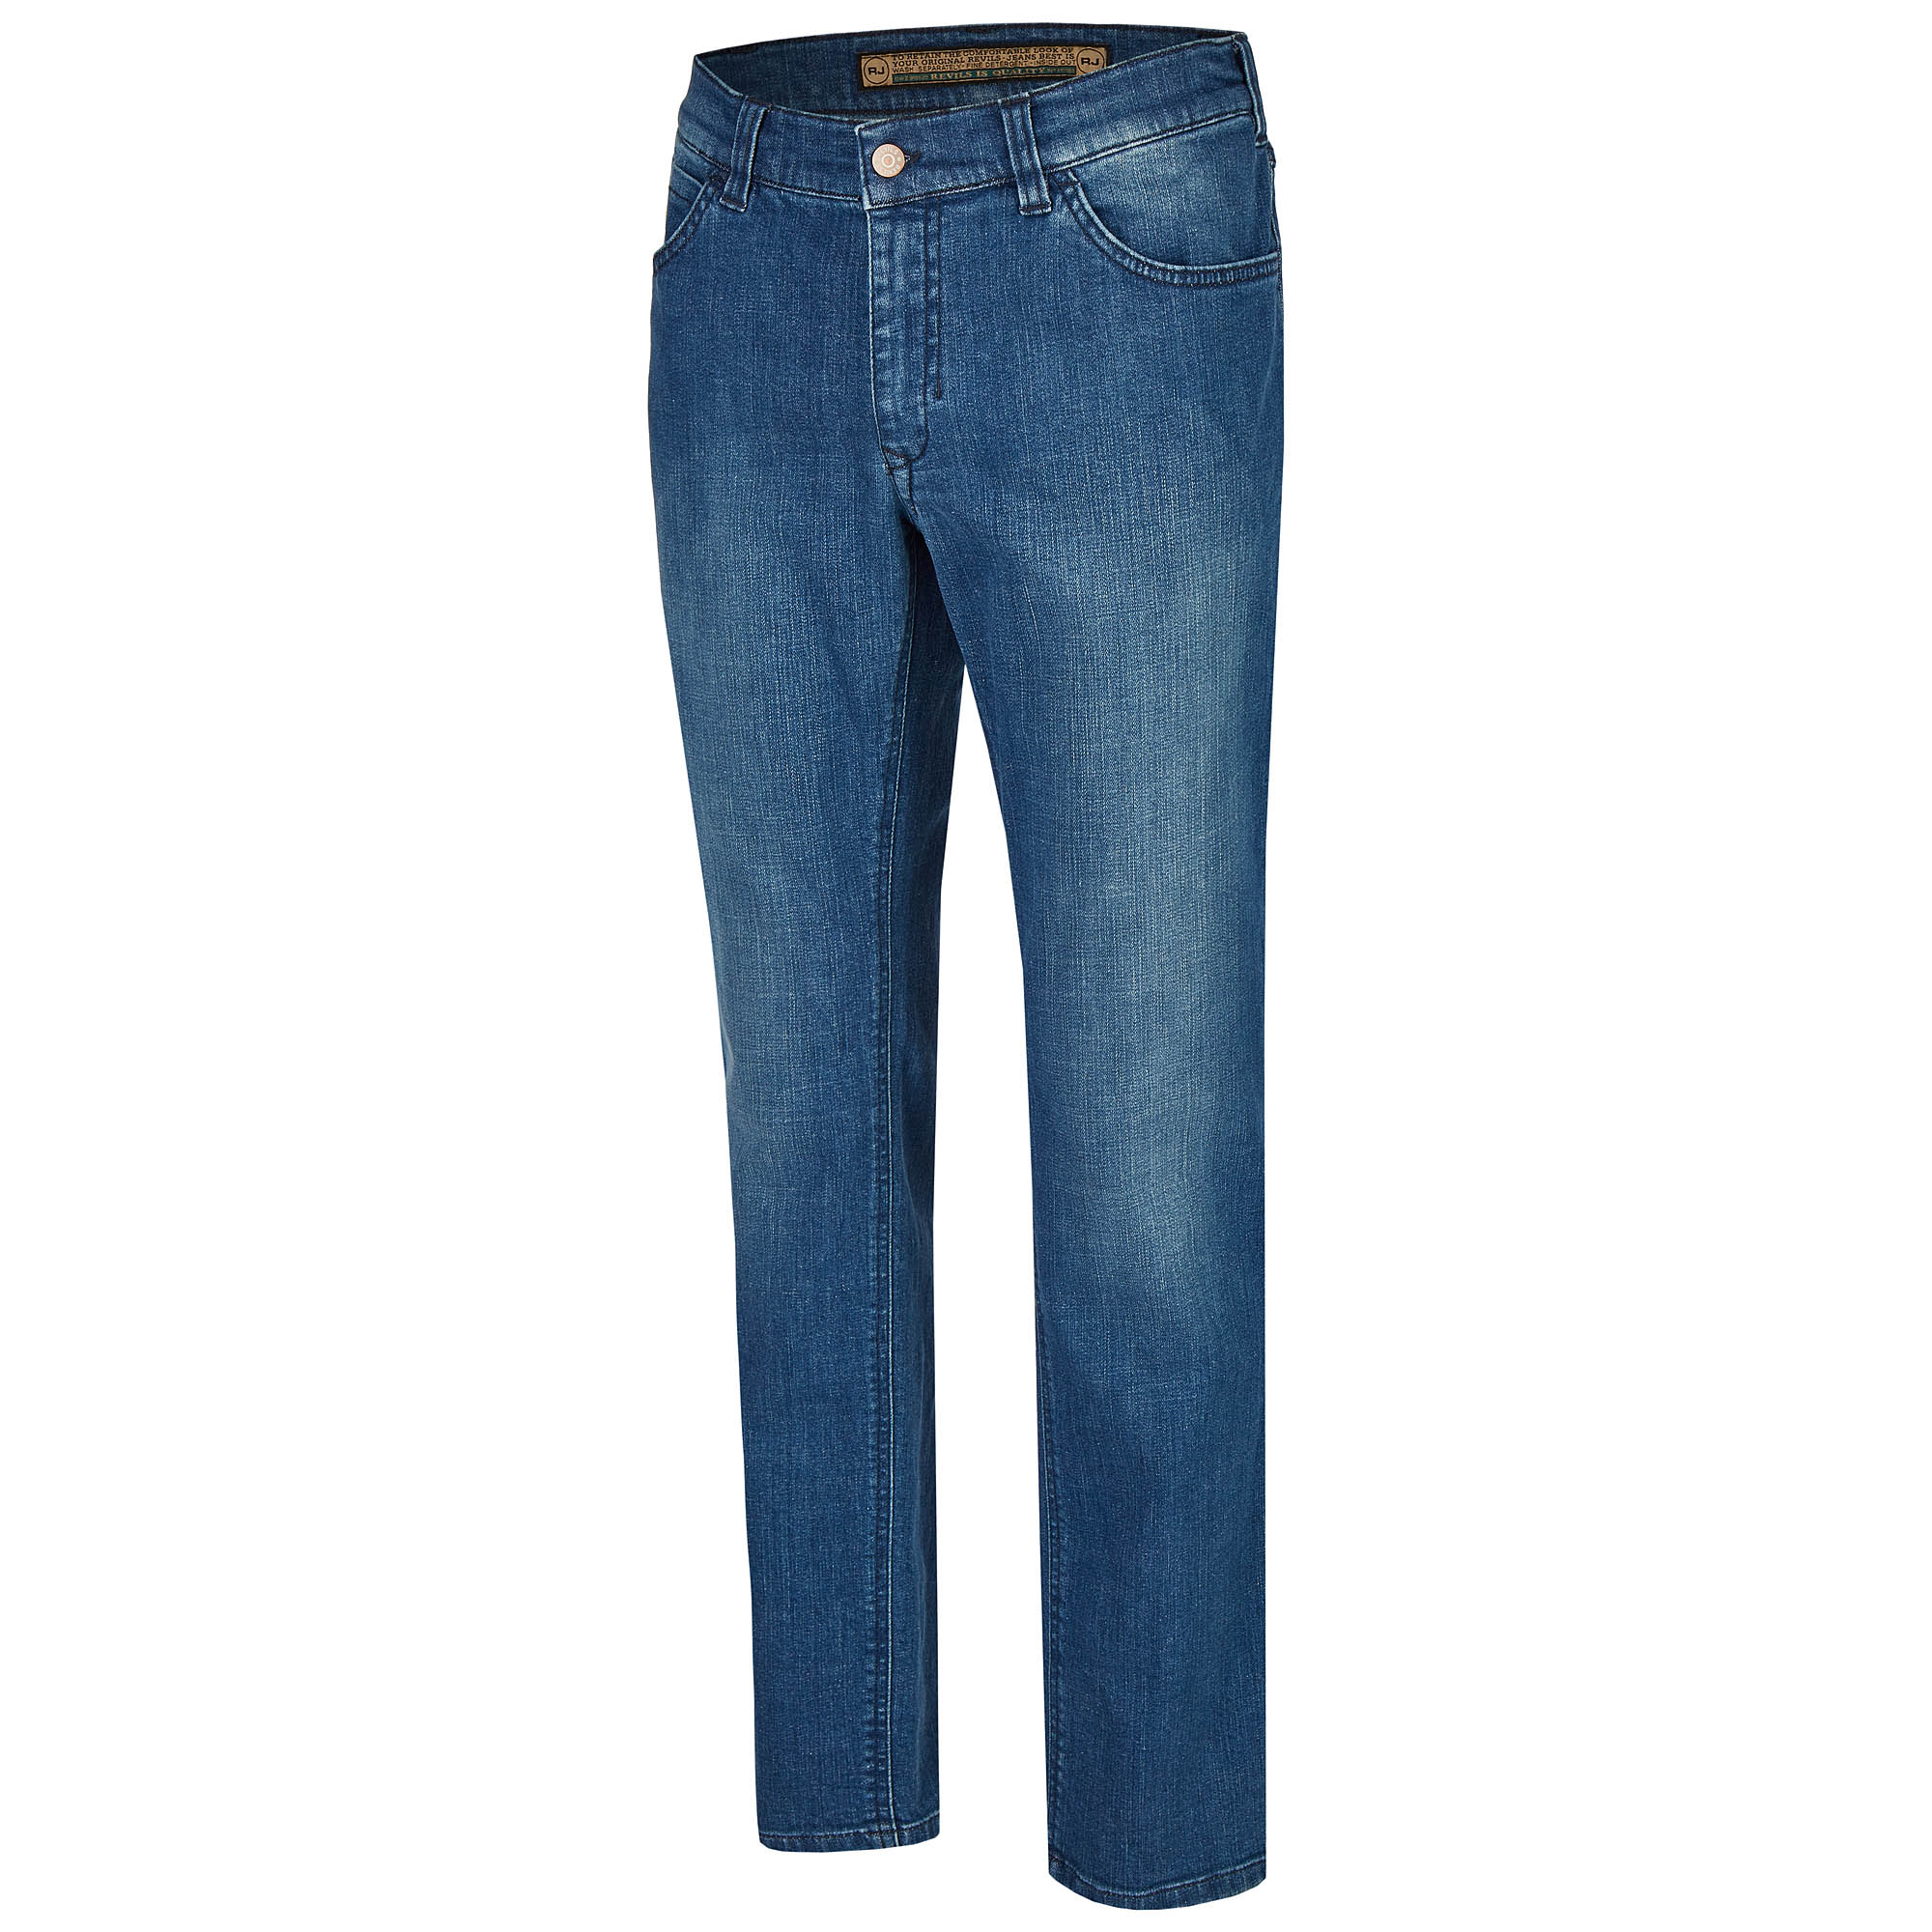 007130541330 1 Revils Jeans Hosen